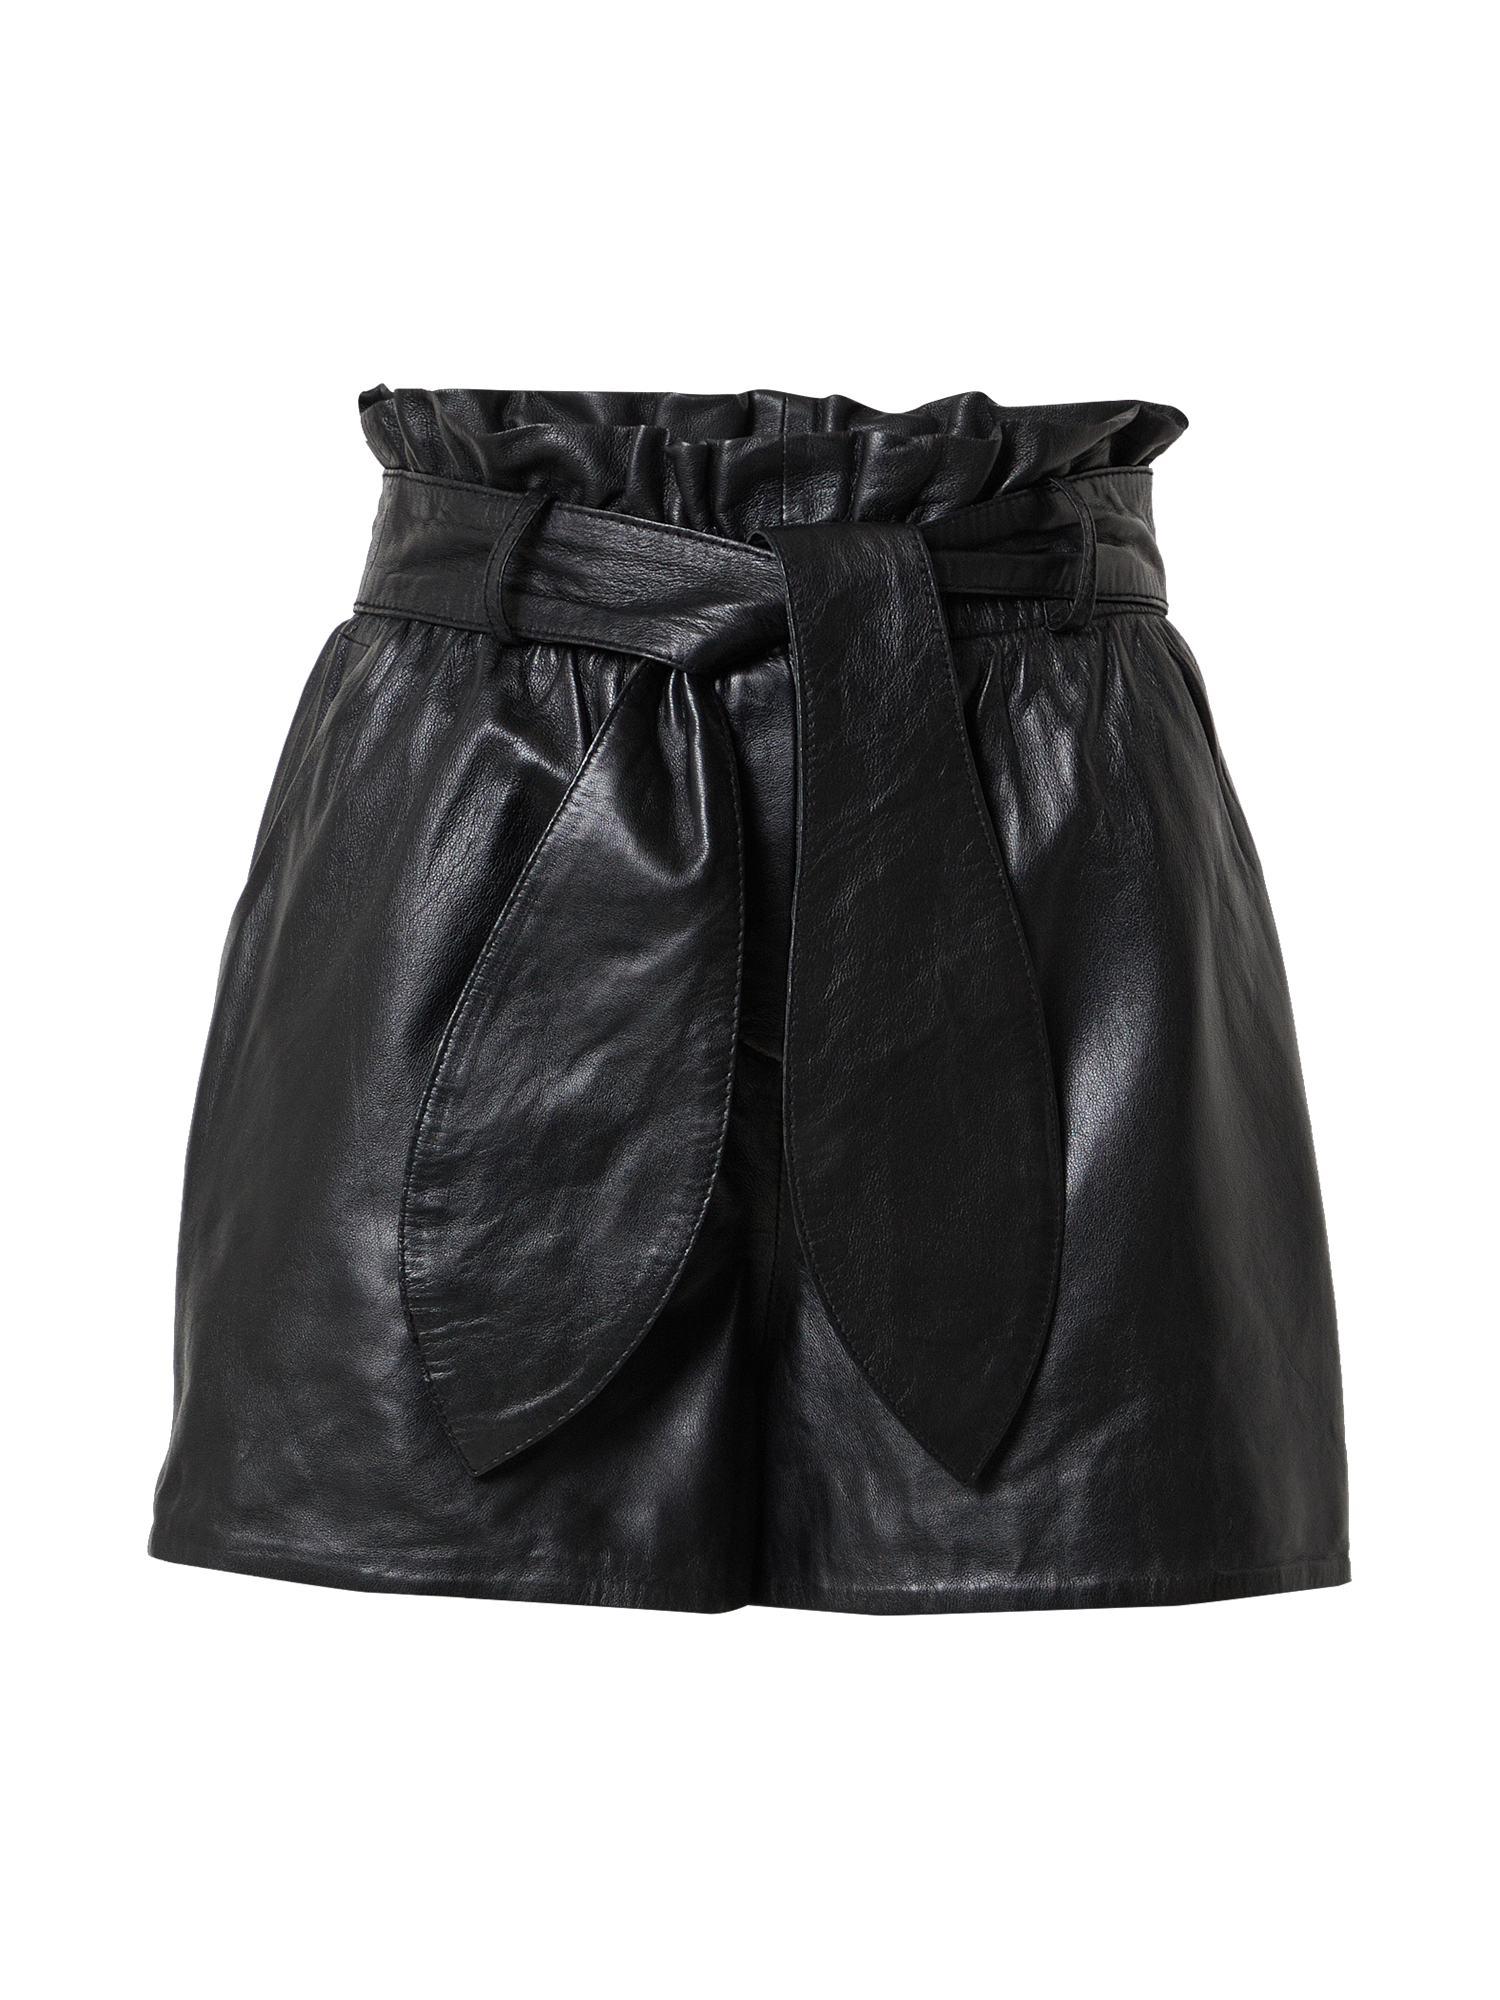 SccBf Spodnie Ibana Spodnie Sasha w kolorze Czarnym 